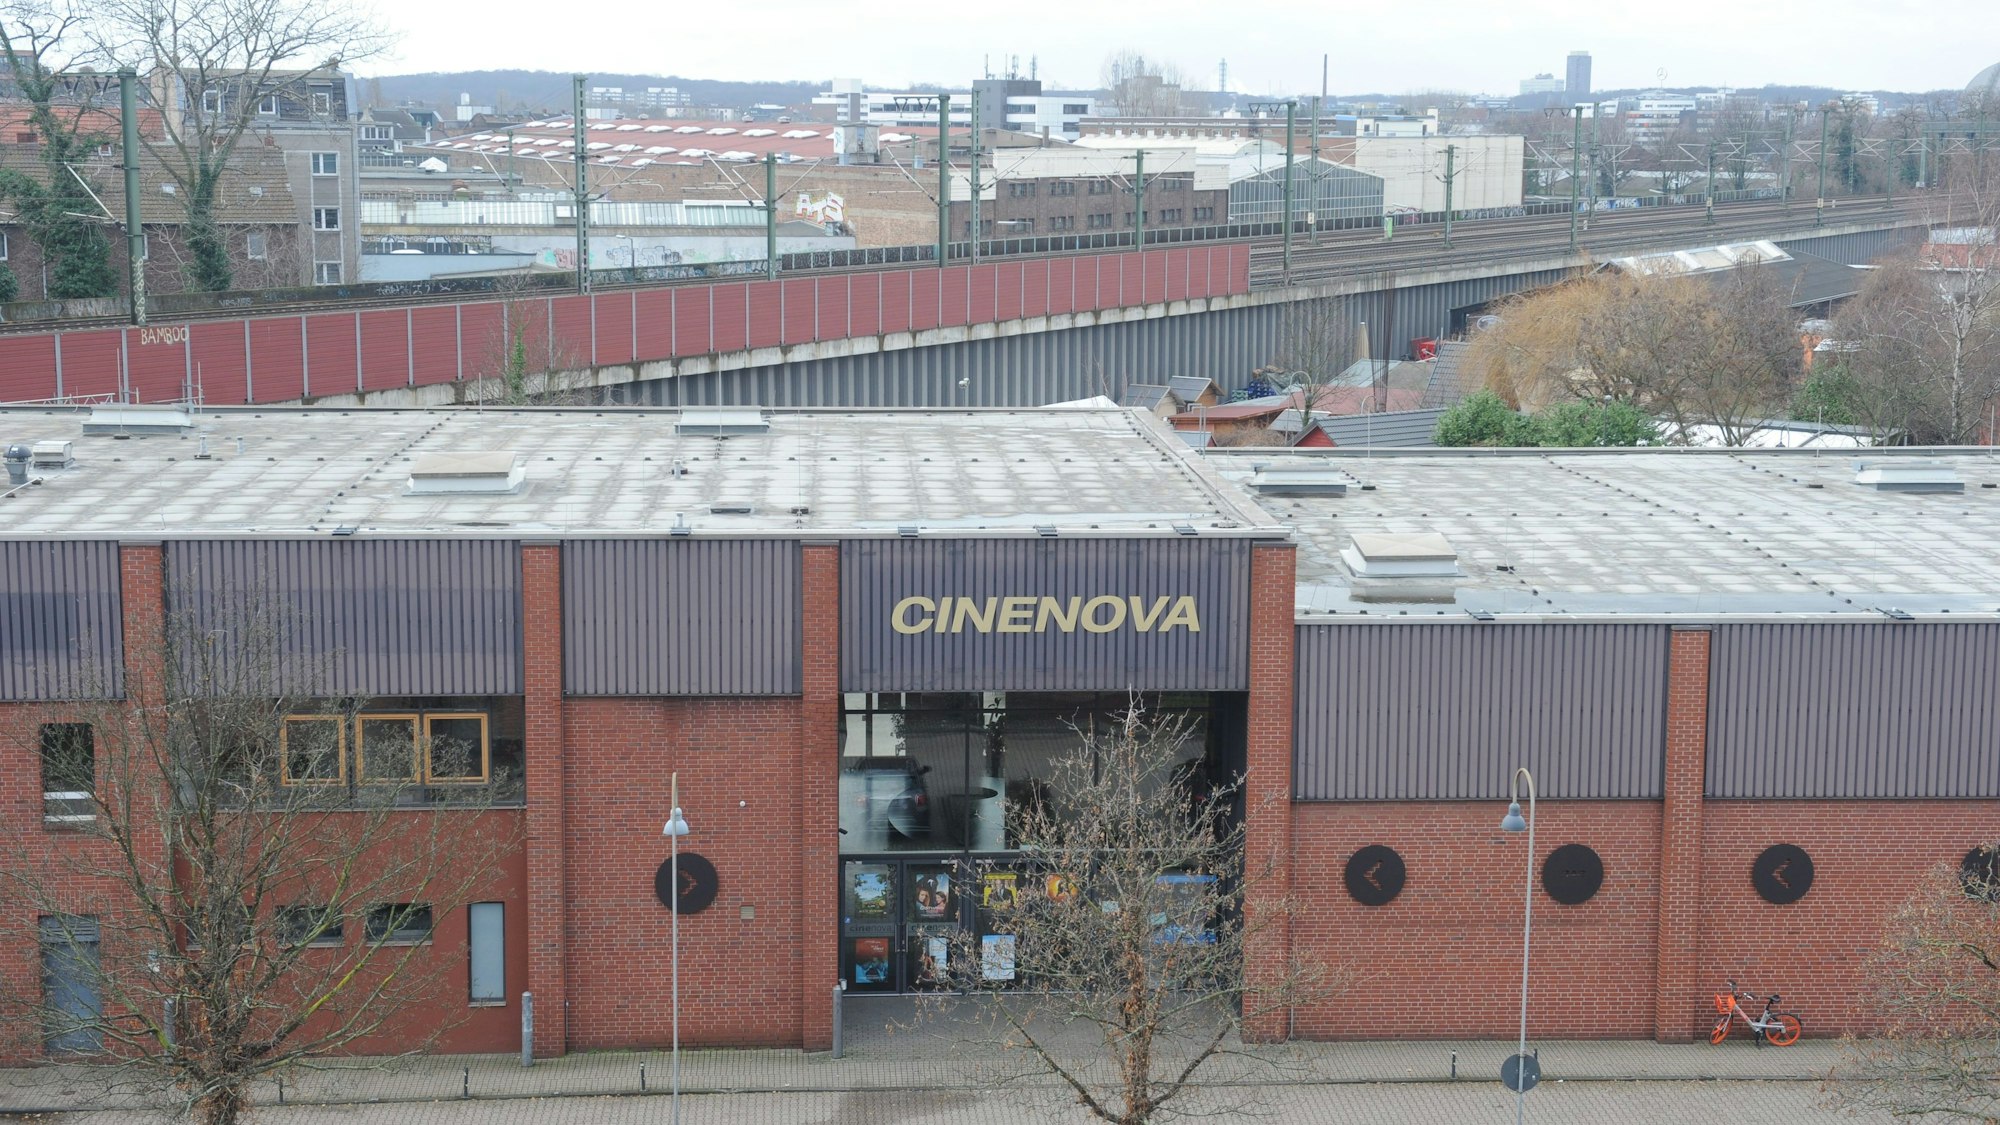 
Das Kino Cinenova in Köln-Ehrenfeld von außen.